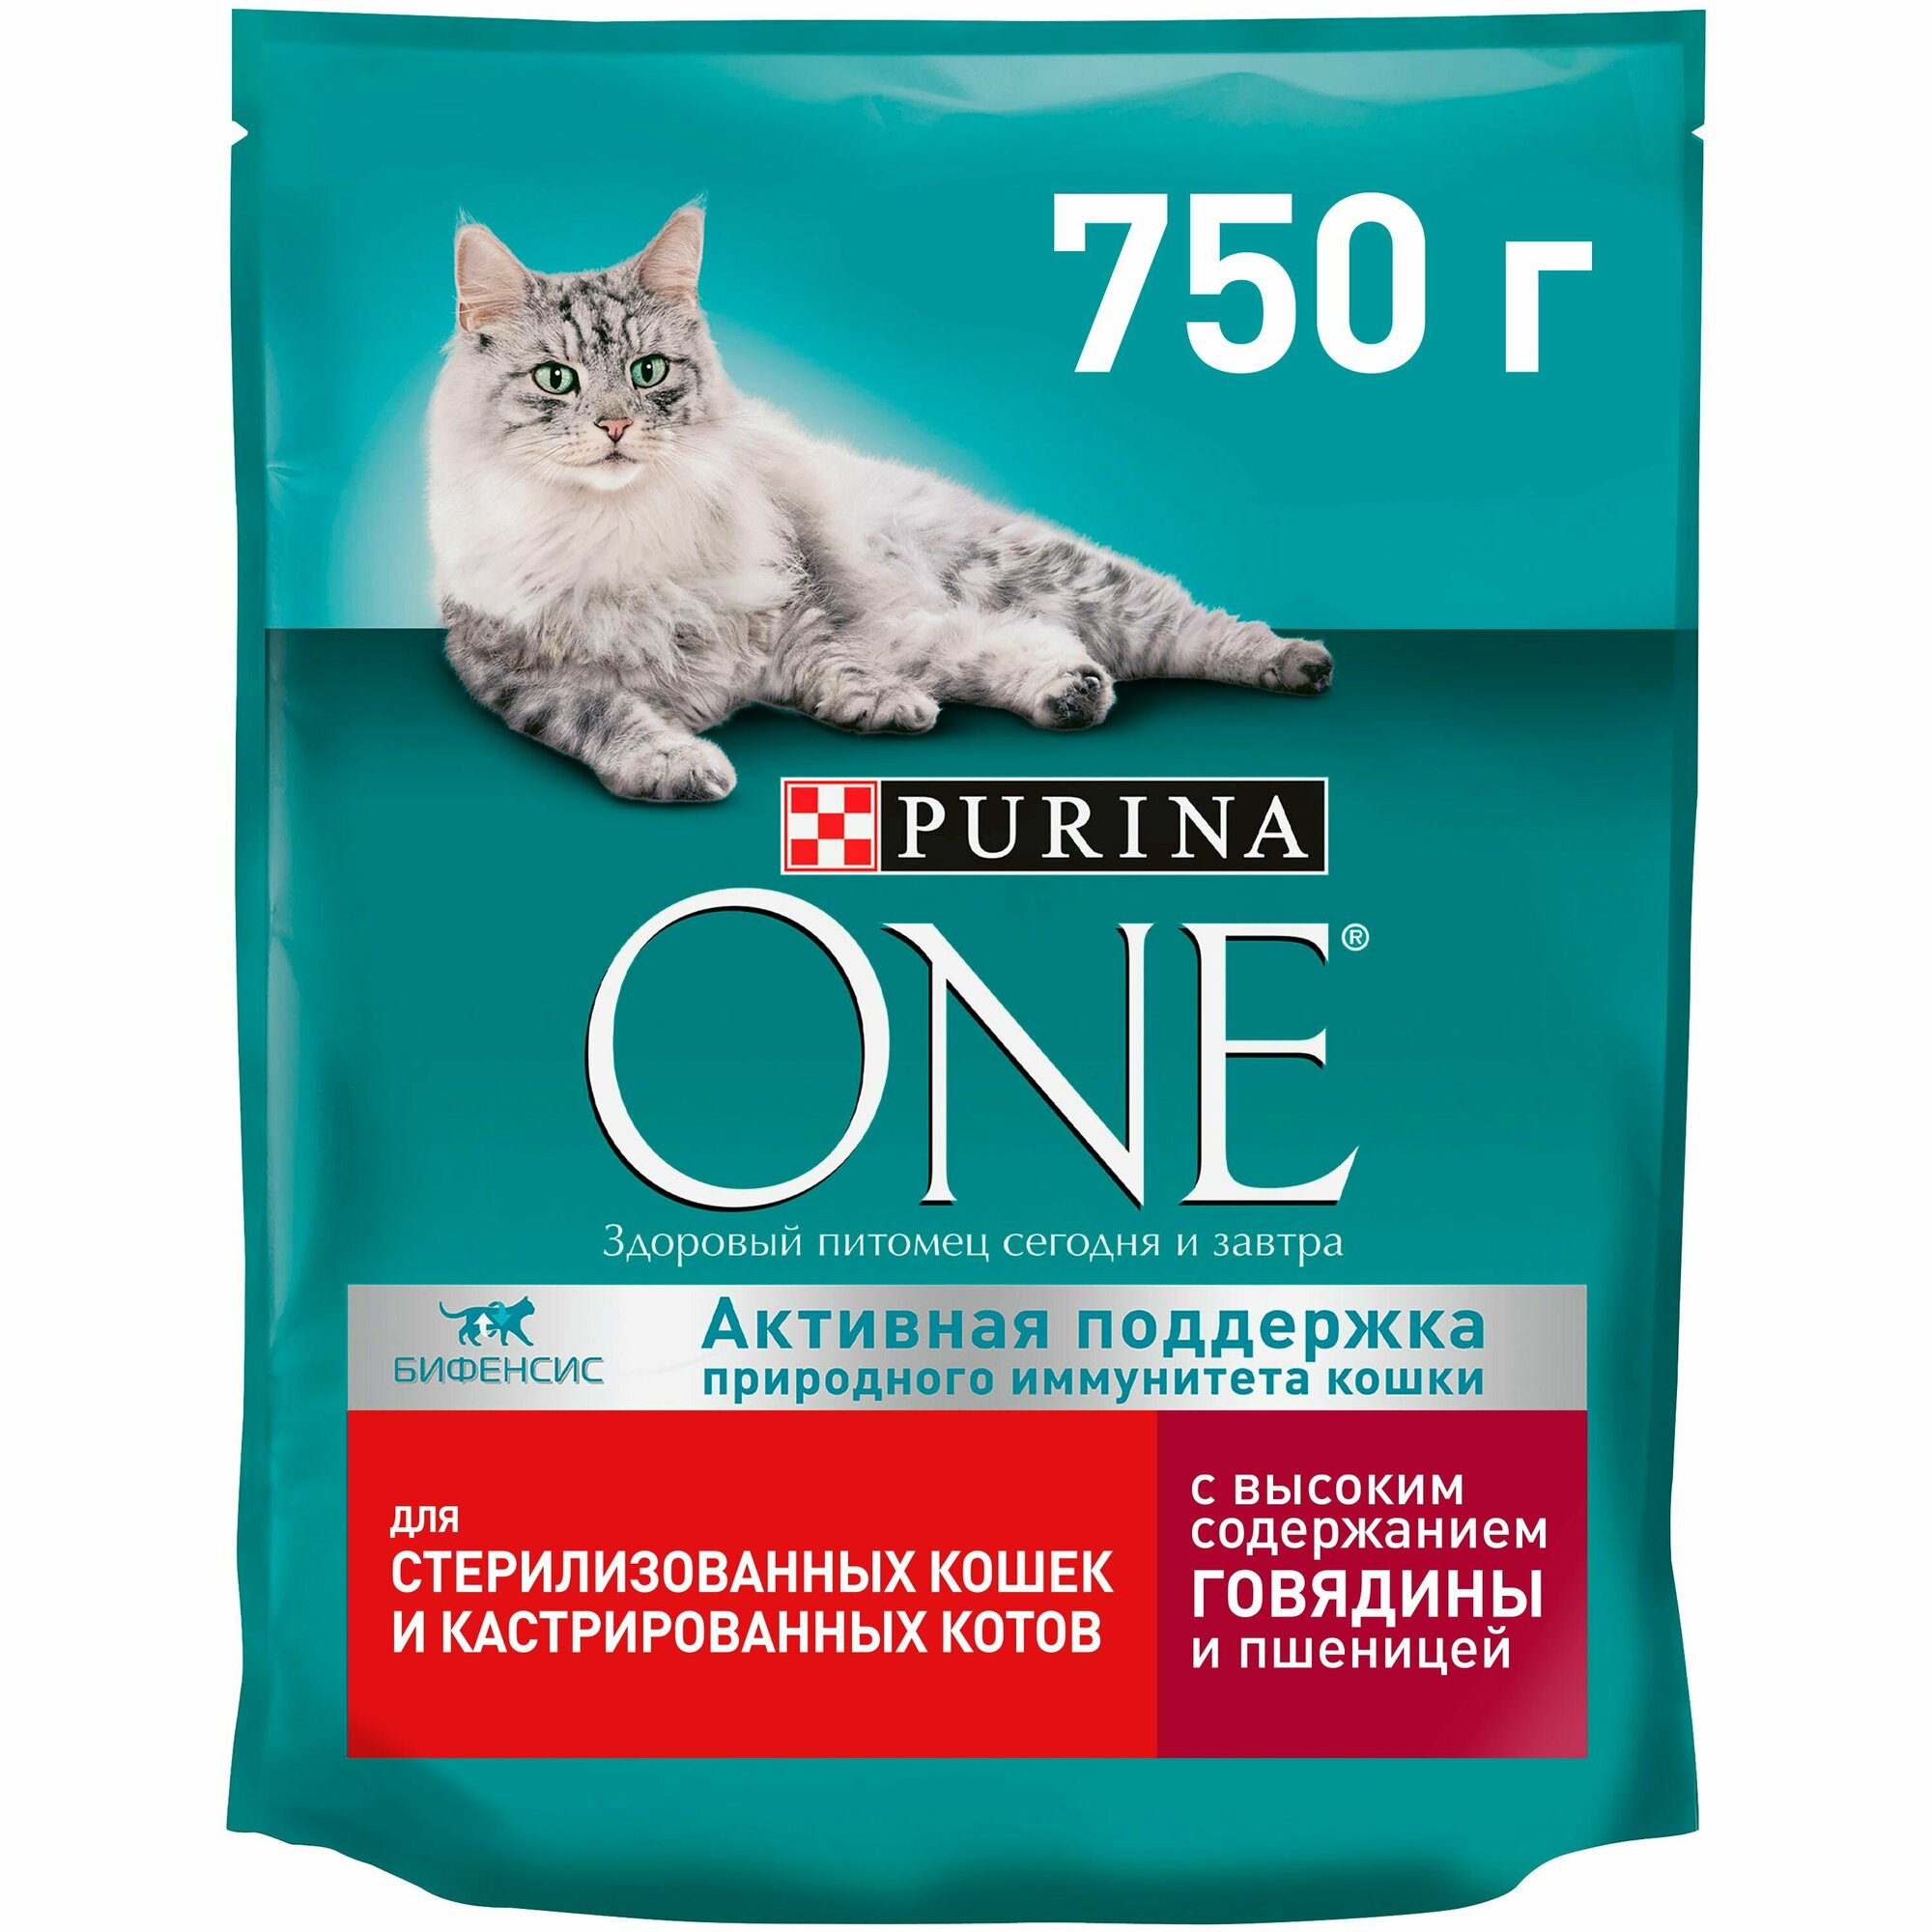 Сухой корм Purina ONE для стерилизованных кошек и котов с говядиной и пшеницей, пакет, 750 г